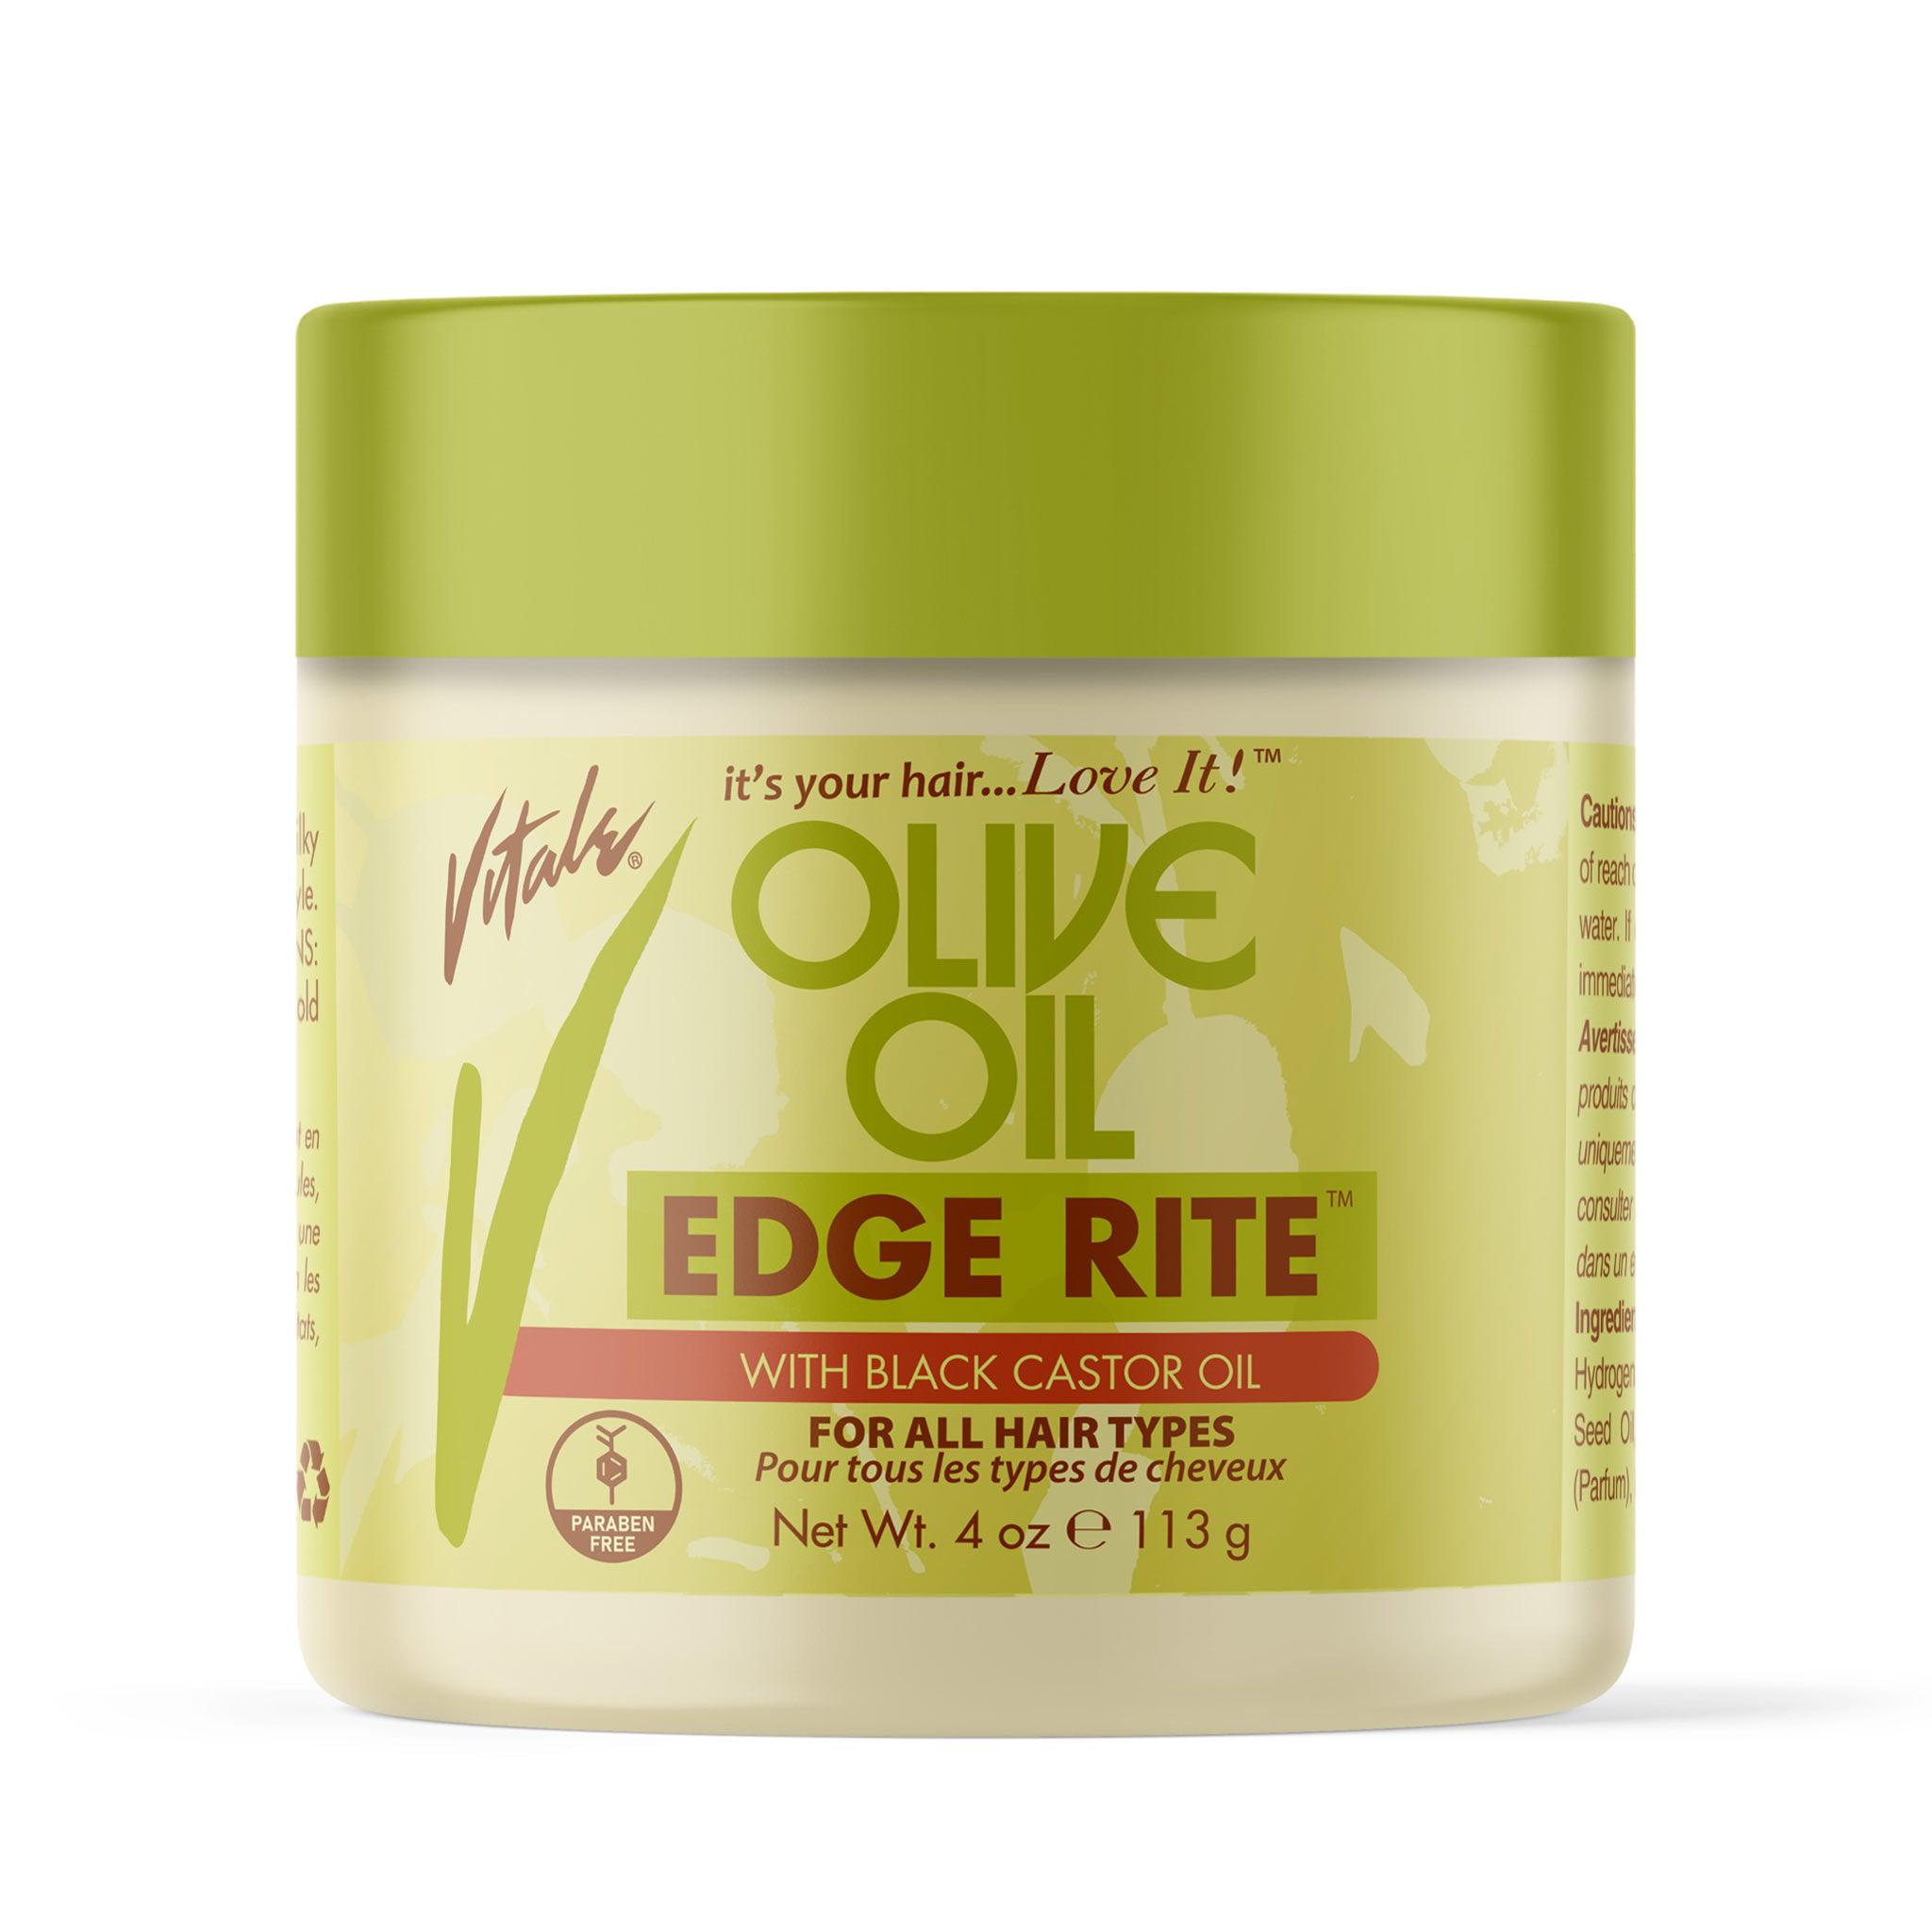 Vitale Olive Oil Edge Rite Front